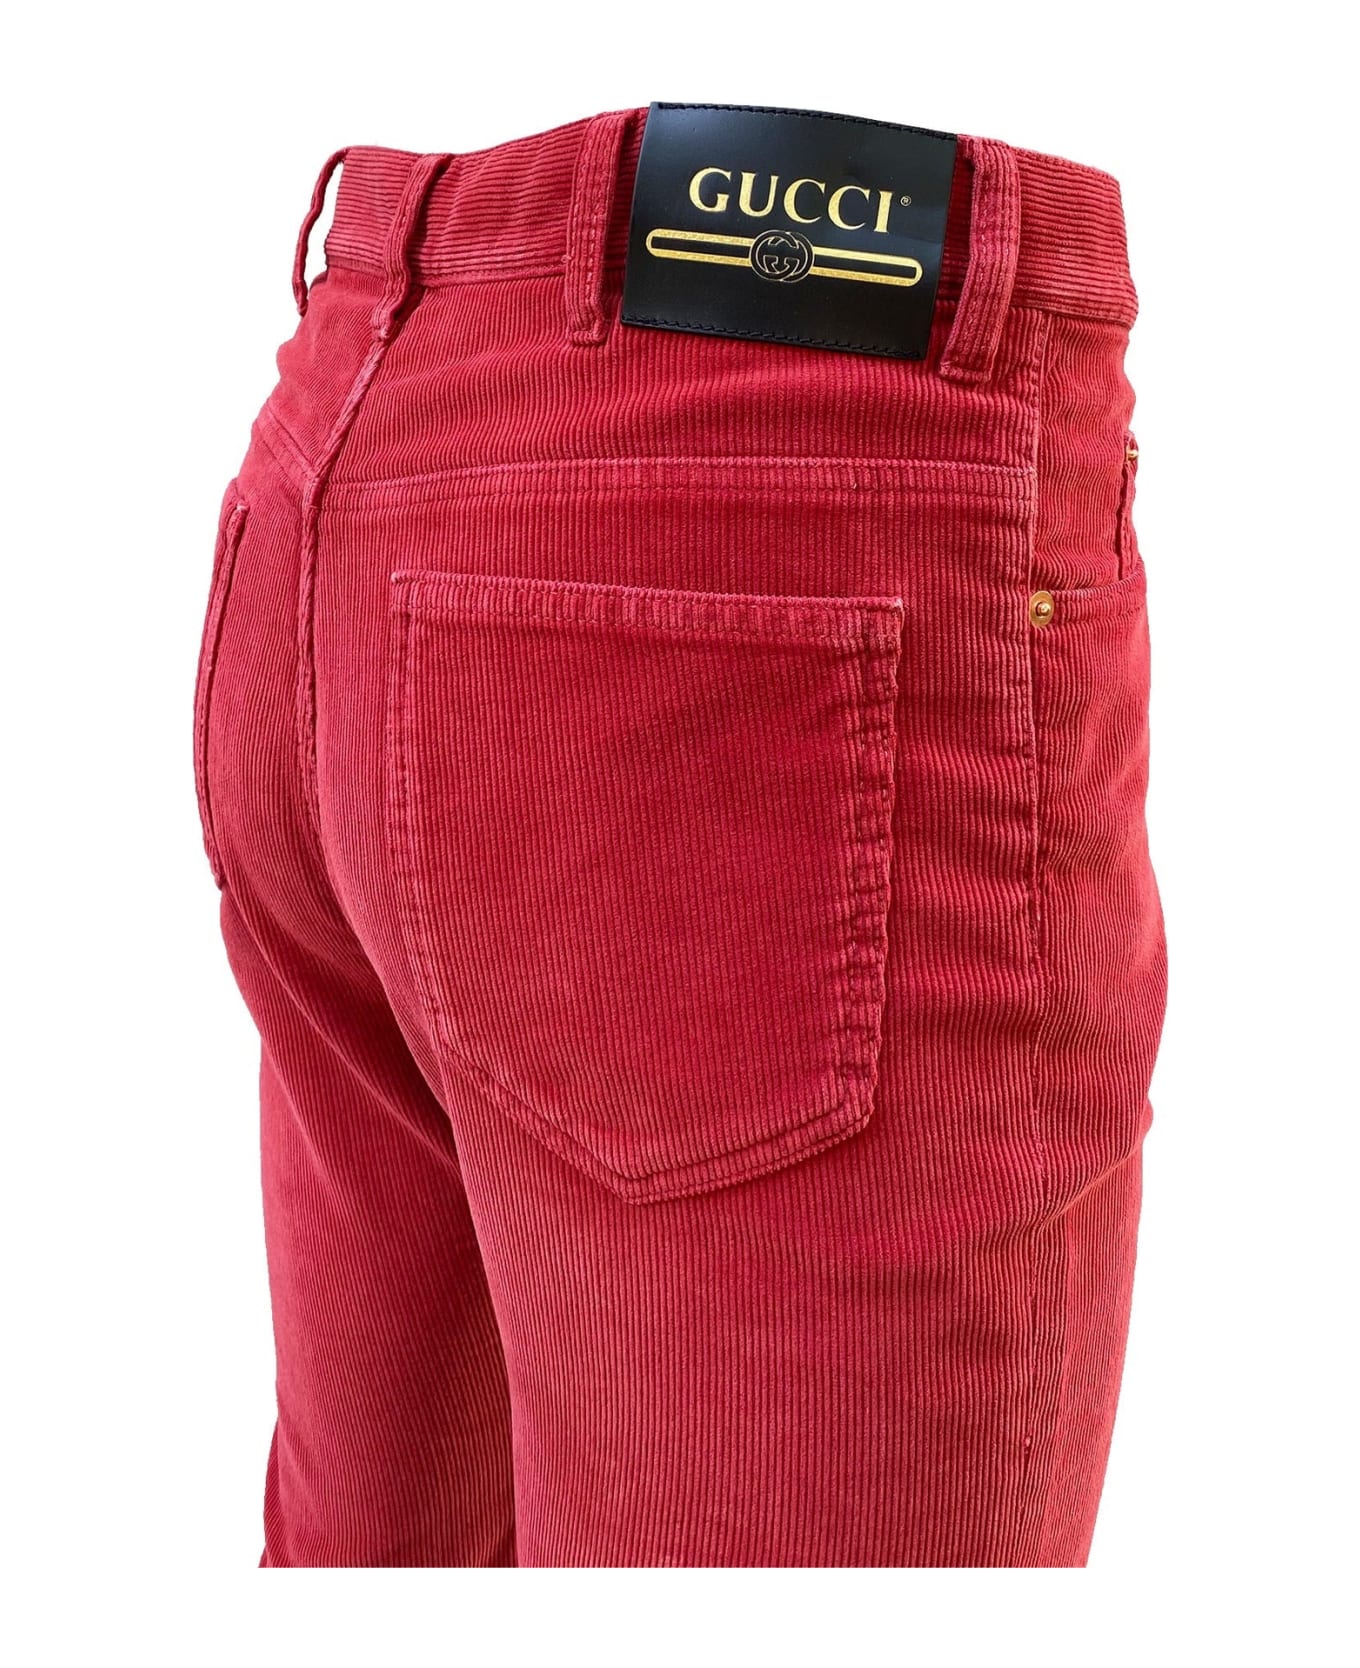 Gucci Velvet Trousers - Red デニム